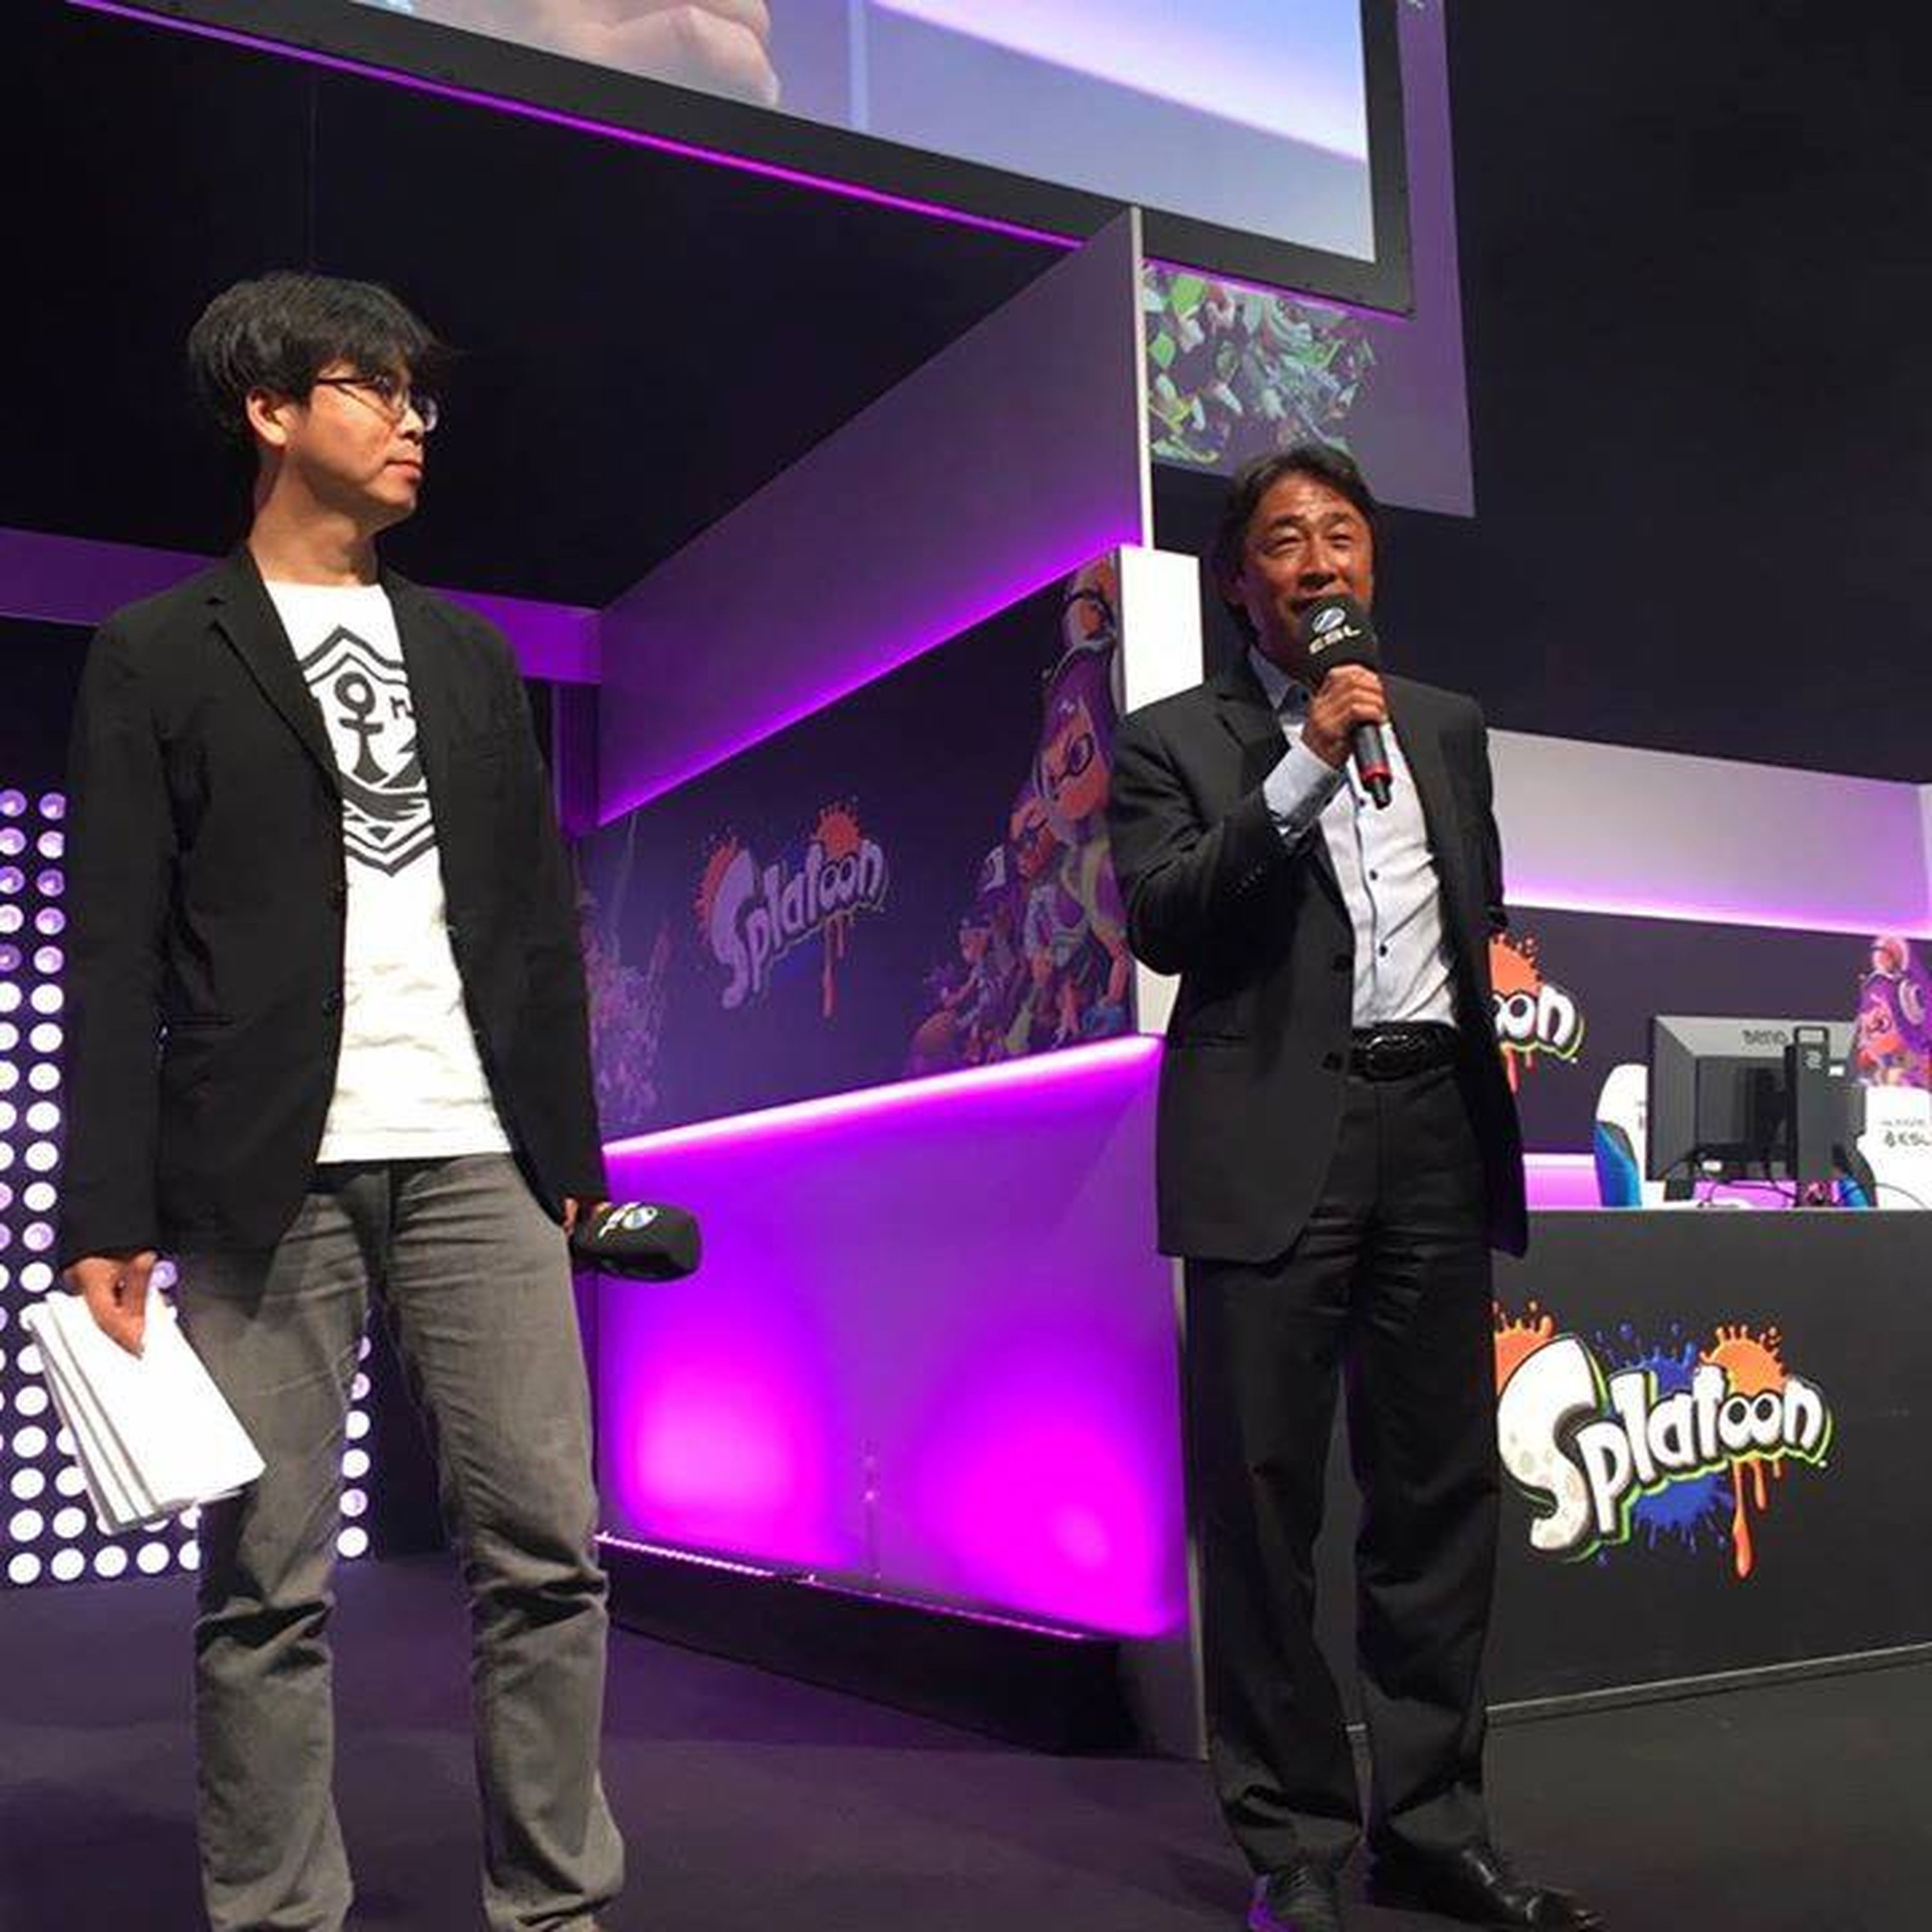 El productor de Splatoon y el presidente de Nintendo Europa en la Gamescom 2016.